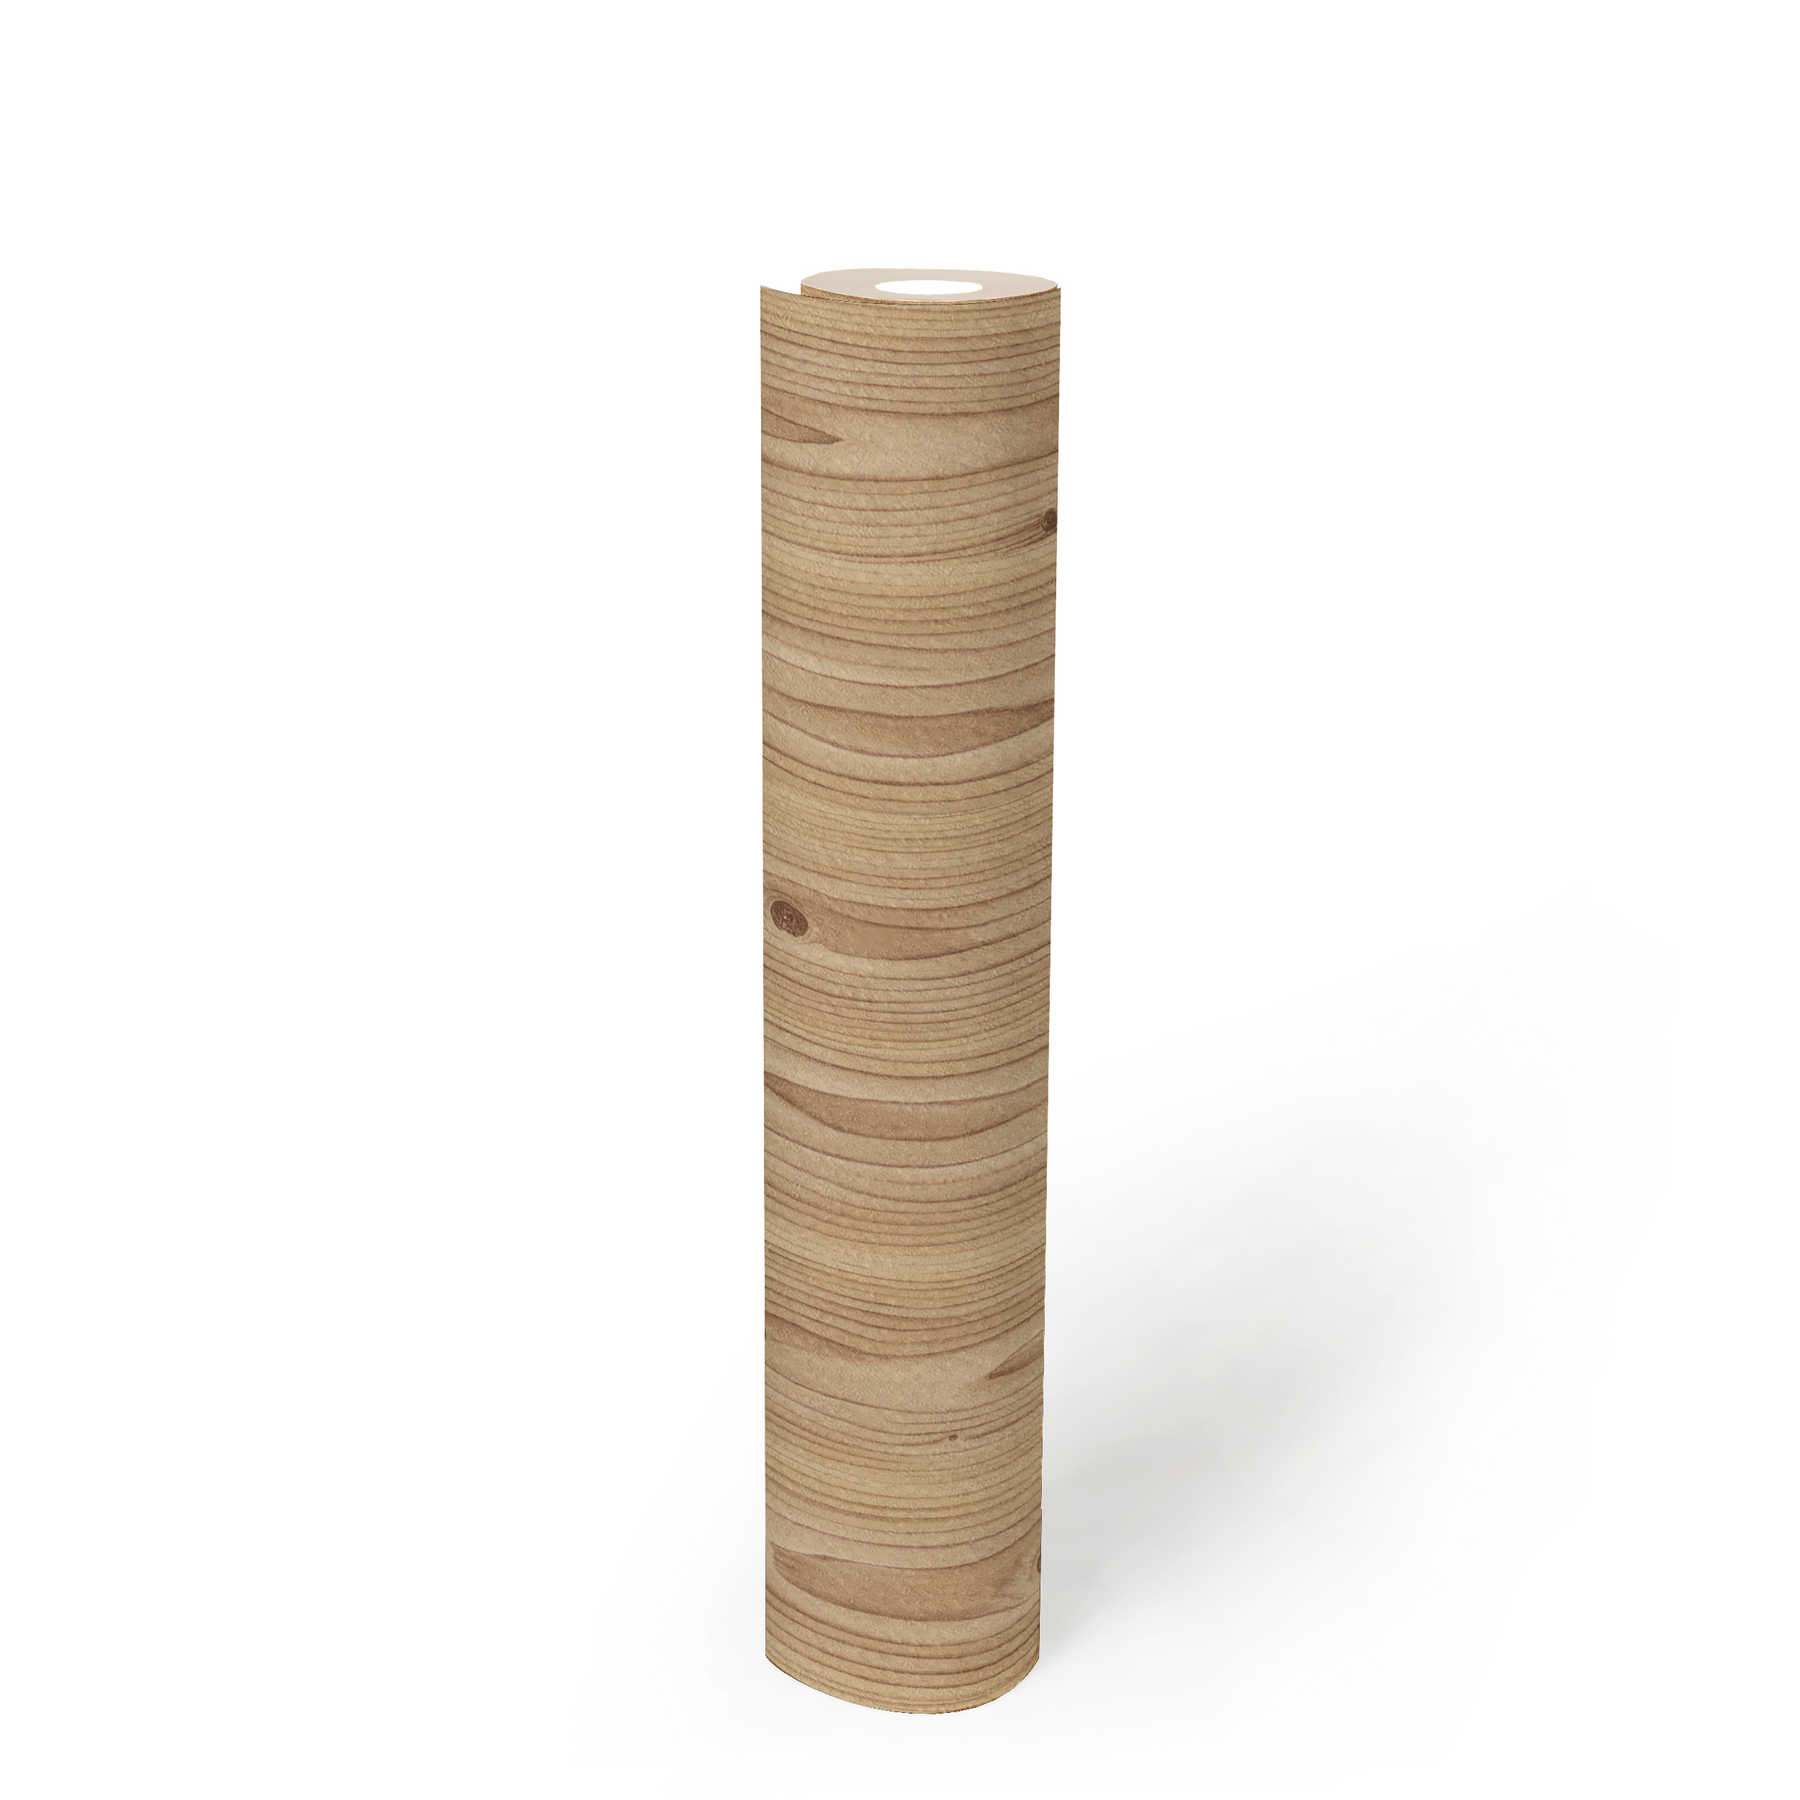             Holz-Tapete natürliche Maserung & Strukturprägung – Beige, Braun
        